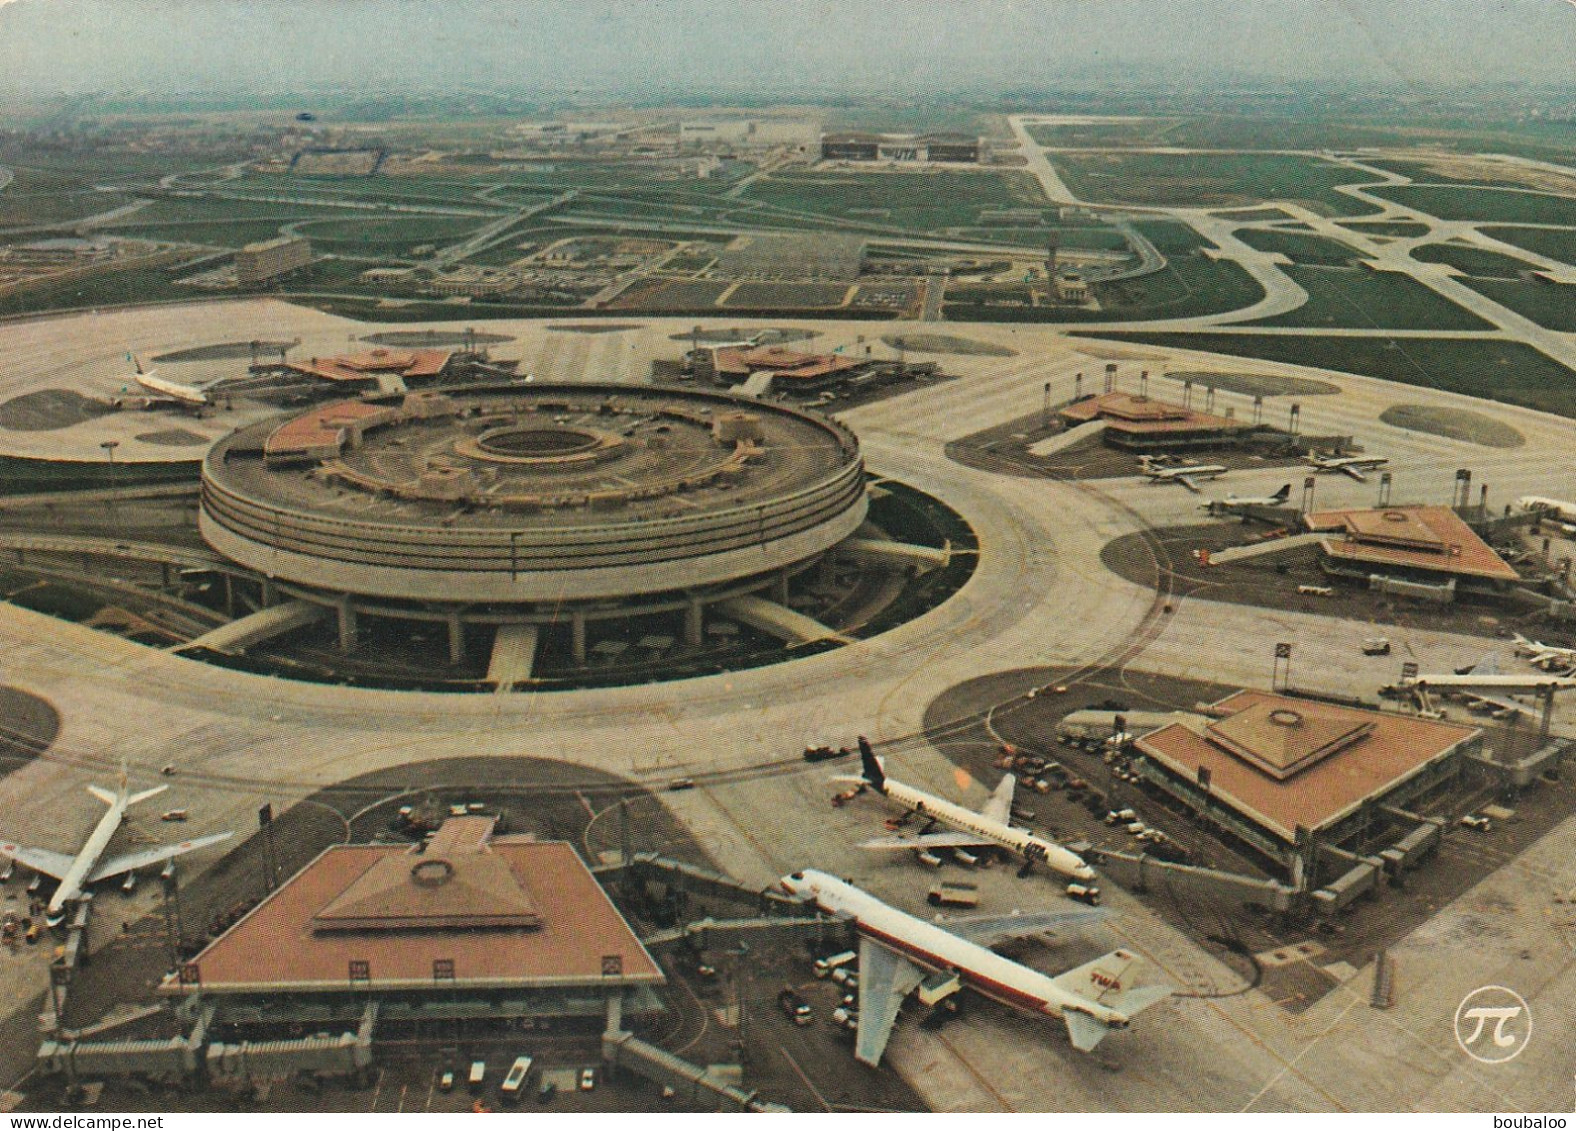 AEROPORT CHARLES DE GAULLE - DANS LES DEBUTS DE SON OUVERTURE - Aérodromes